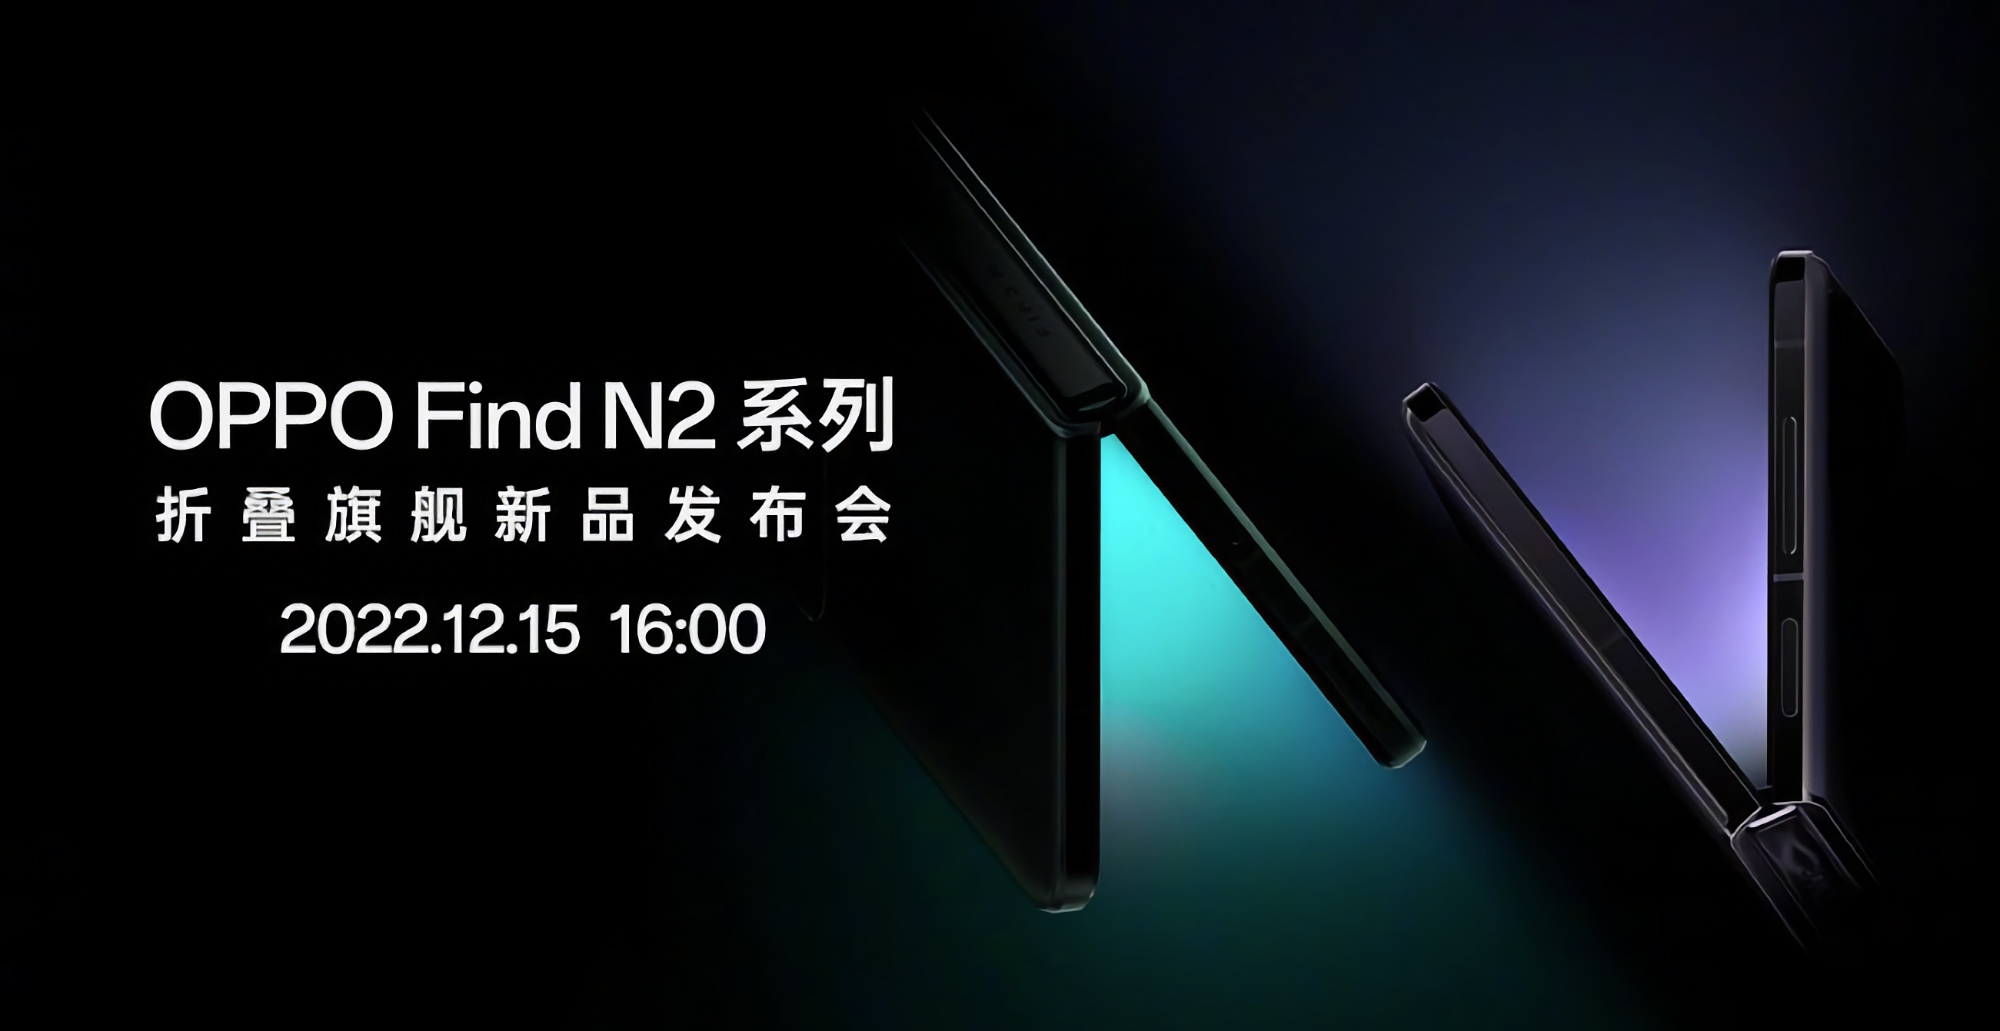 OPPO a annoncé la date de lancement des smartphones pliables Find N2 Fold et Find N2 Flip.